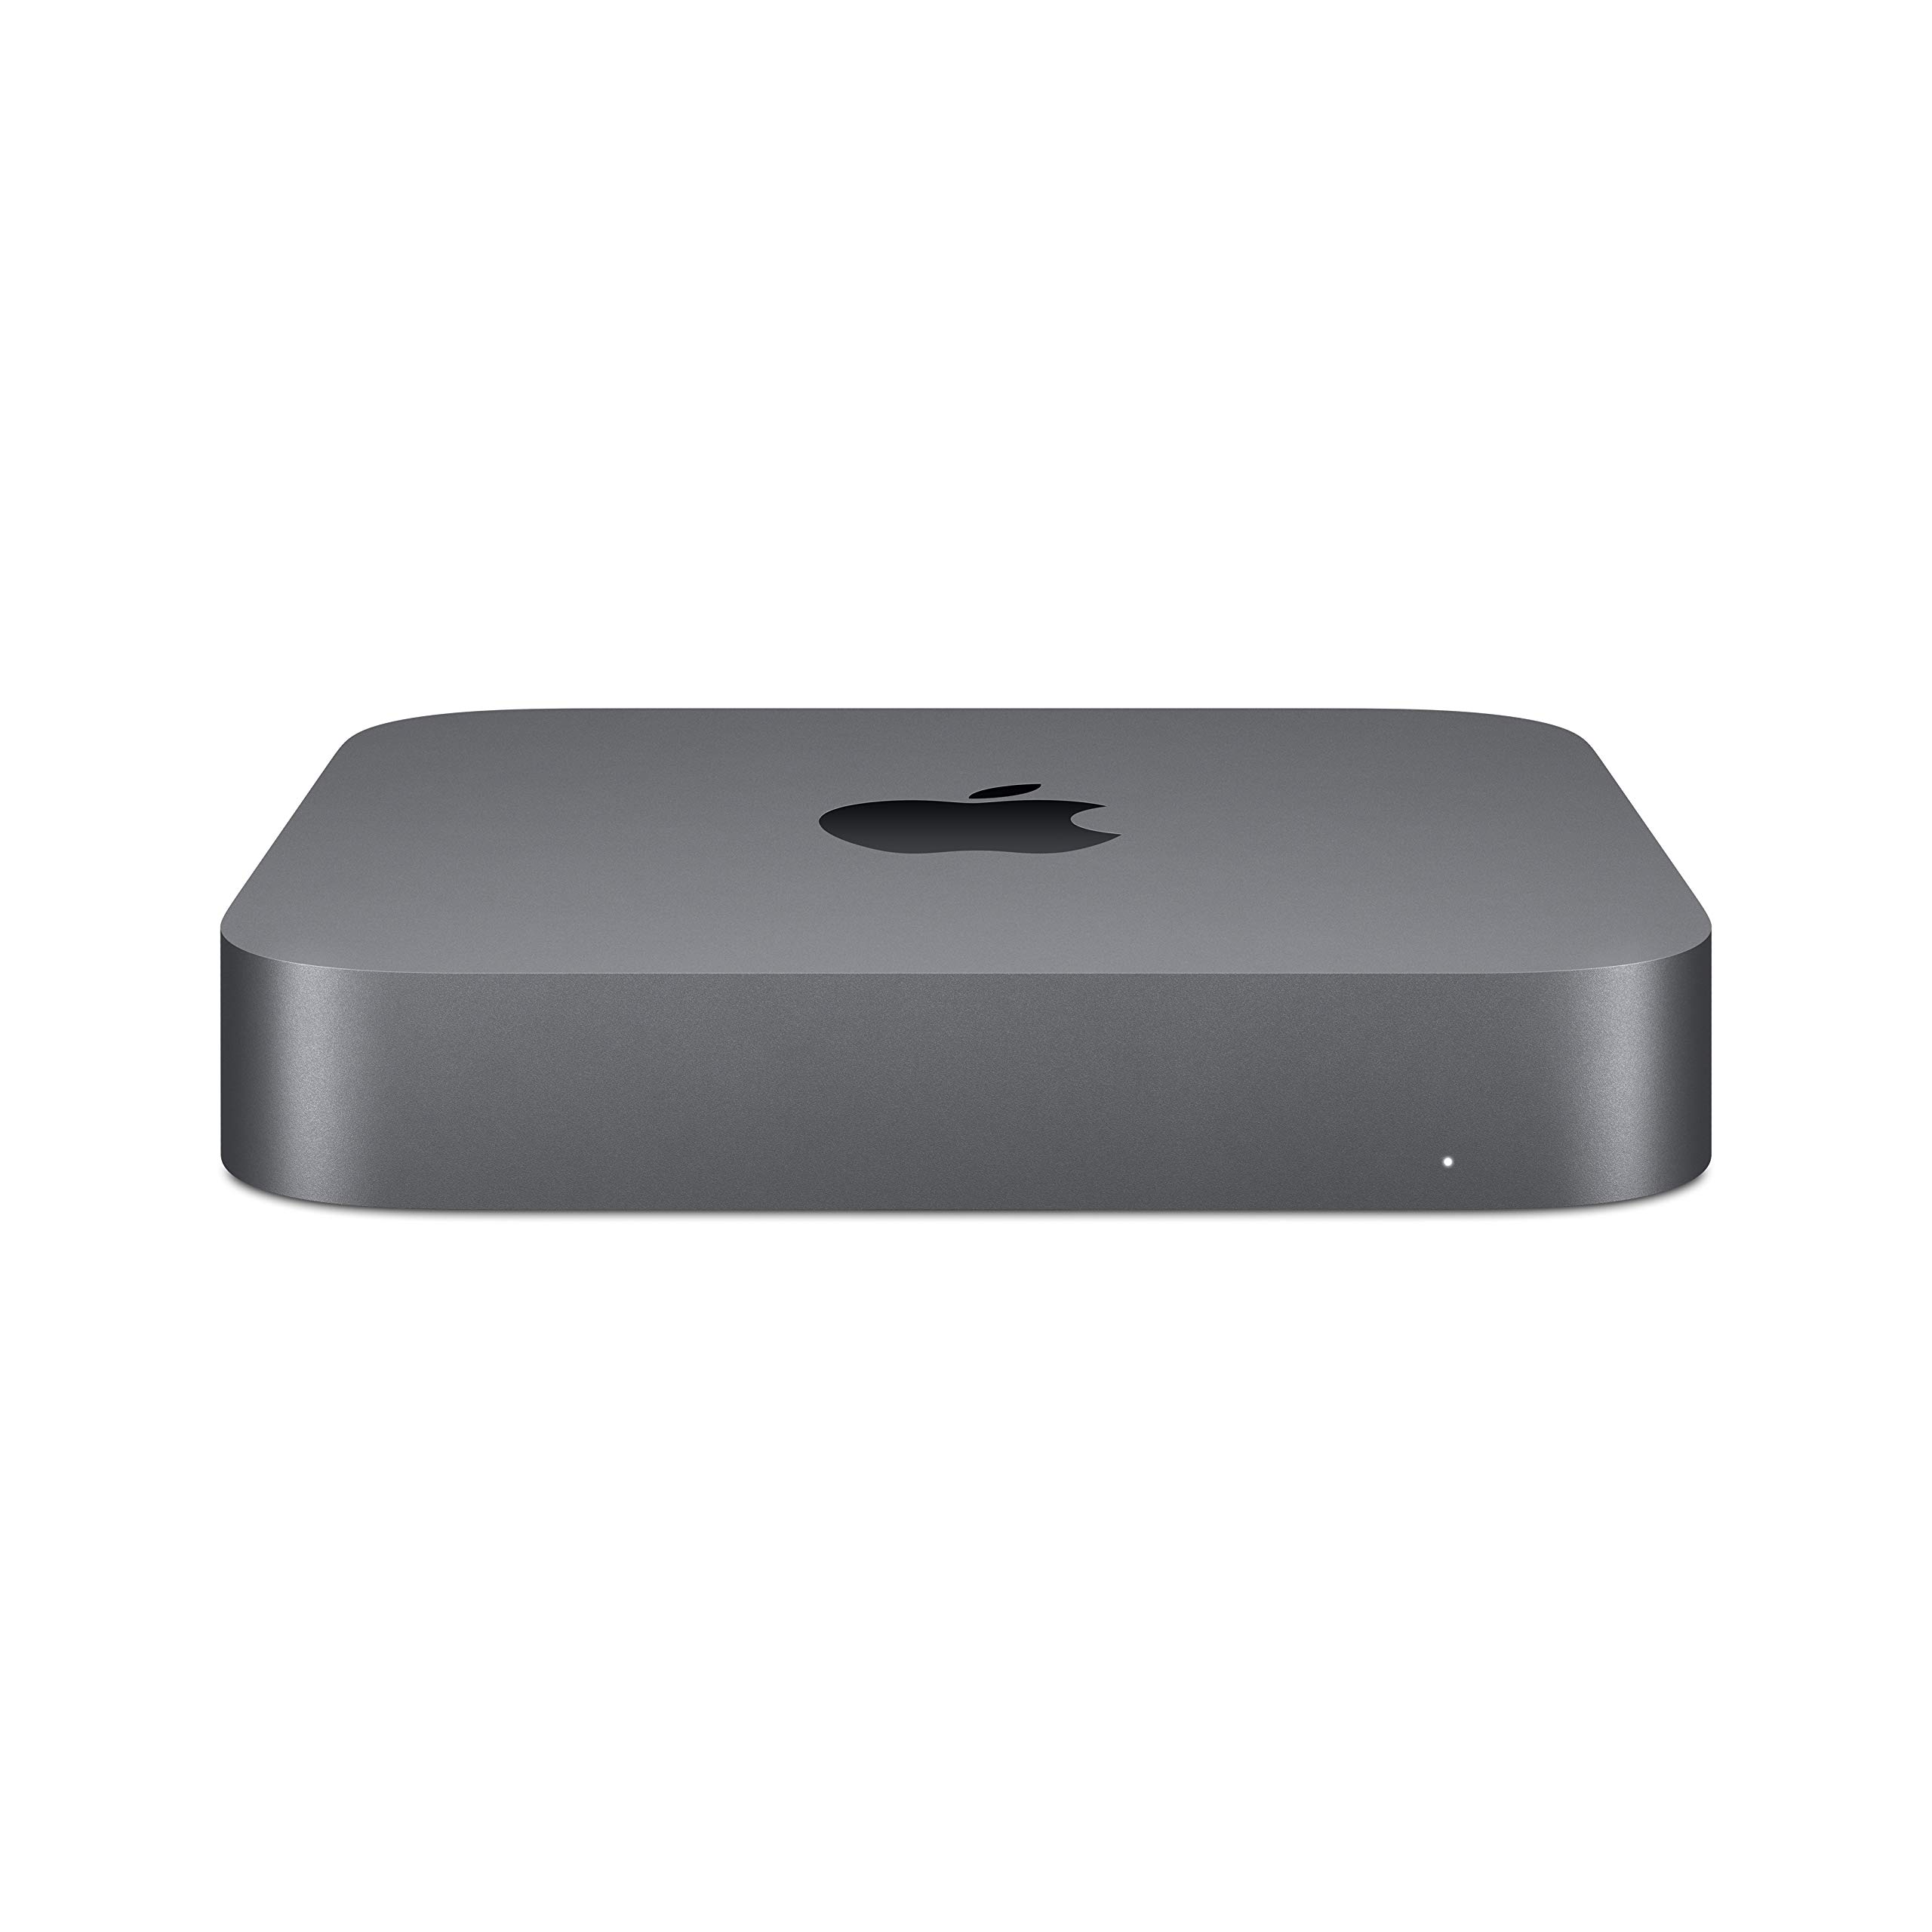 Apple Mac Mini (3.0GHz 6-core Intel Core i5 Processor, 256GB) - Space Gray (Previous Model)